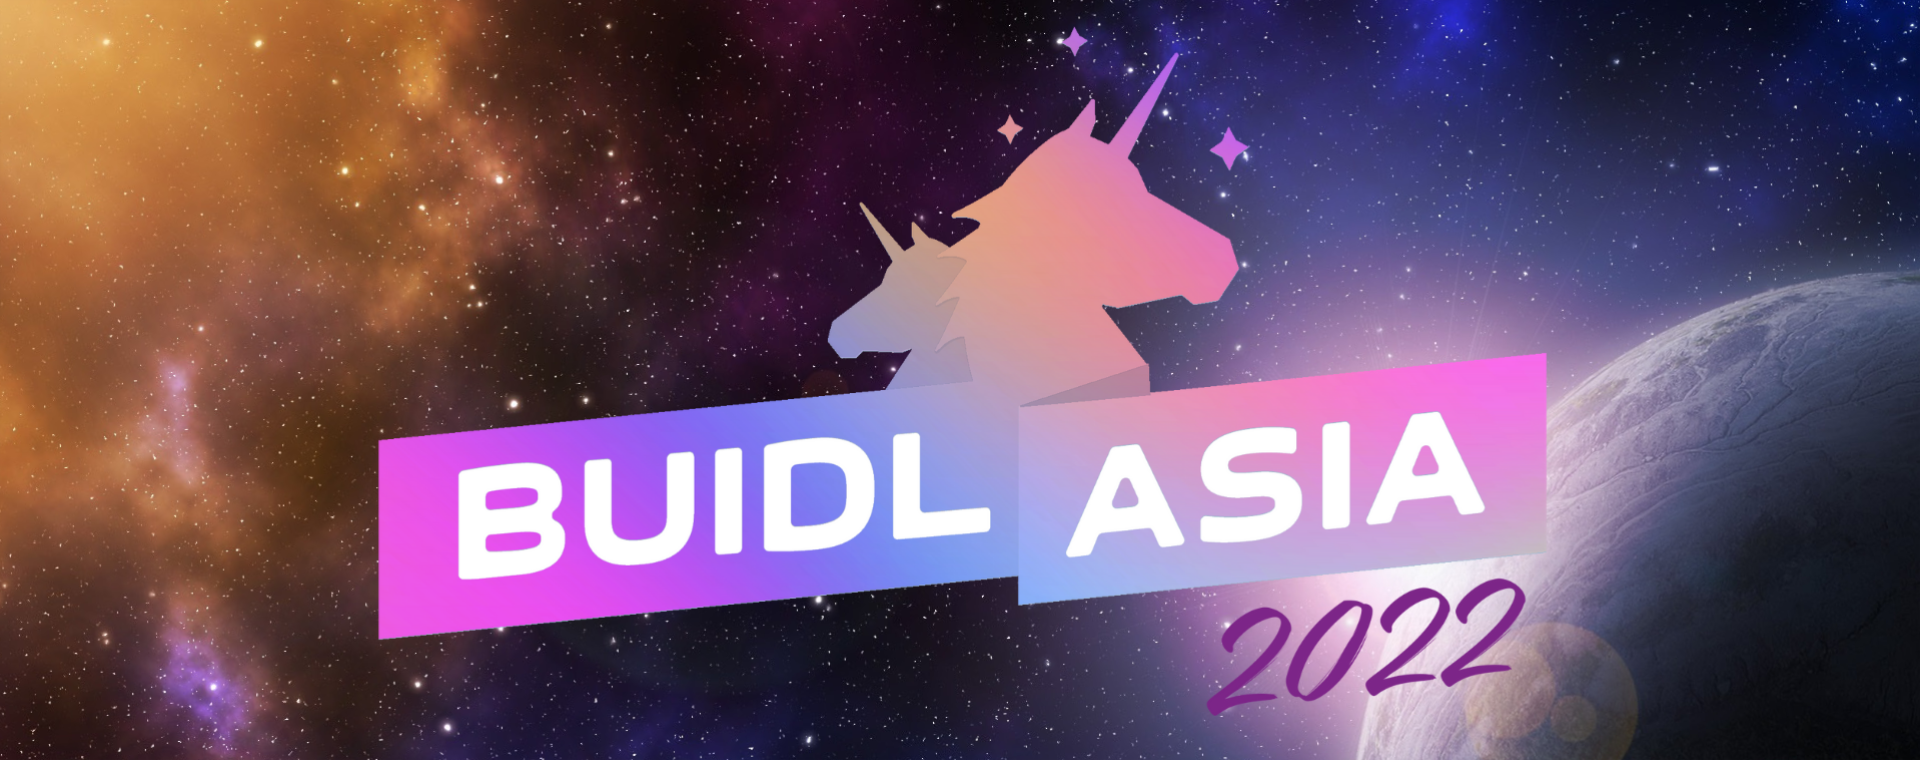 BUIDL Asia 2022 (비들 아시아 컨퍼런스)